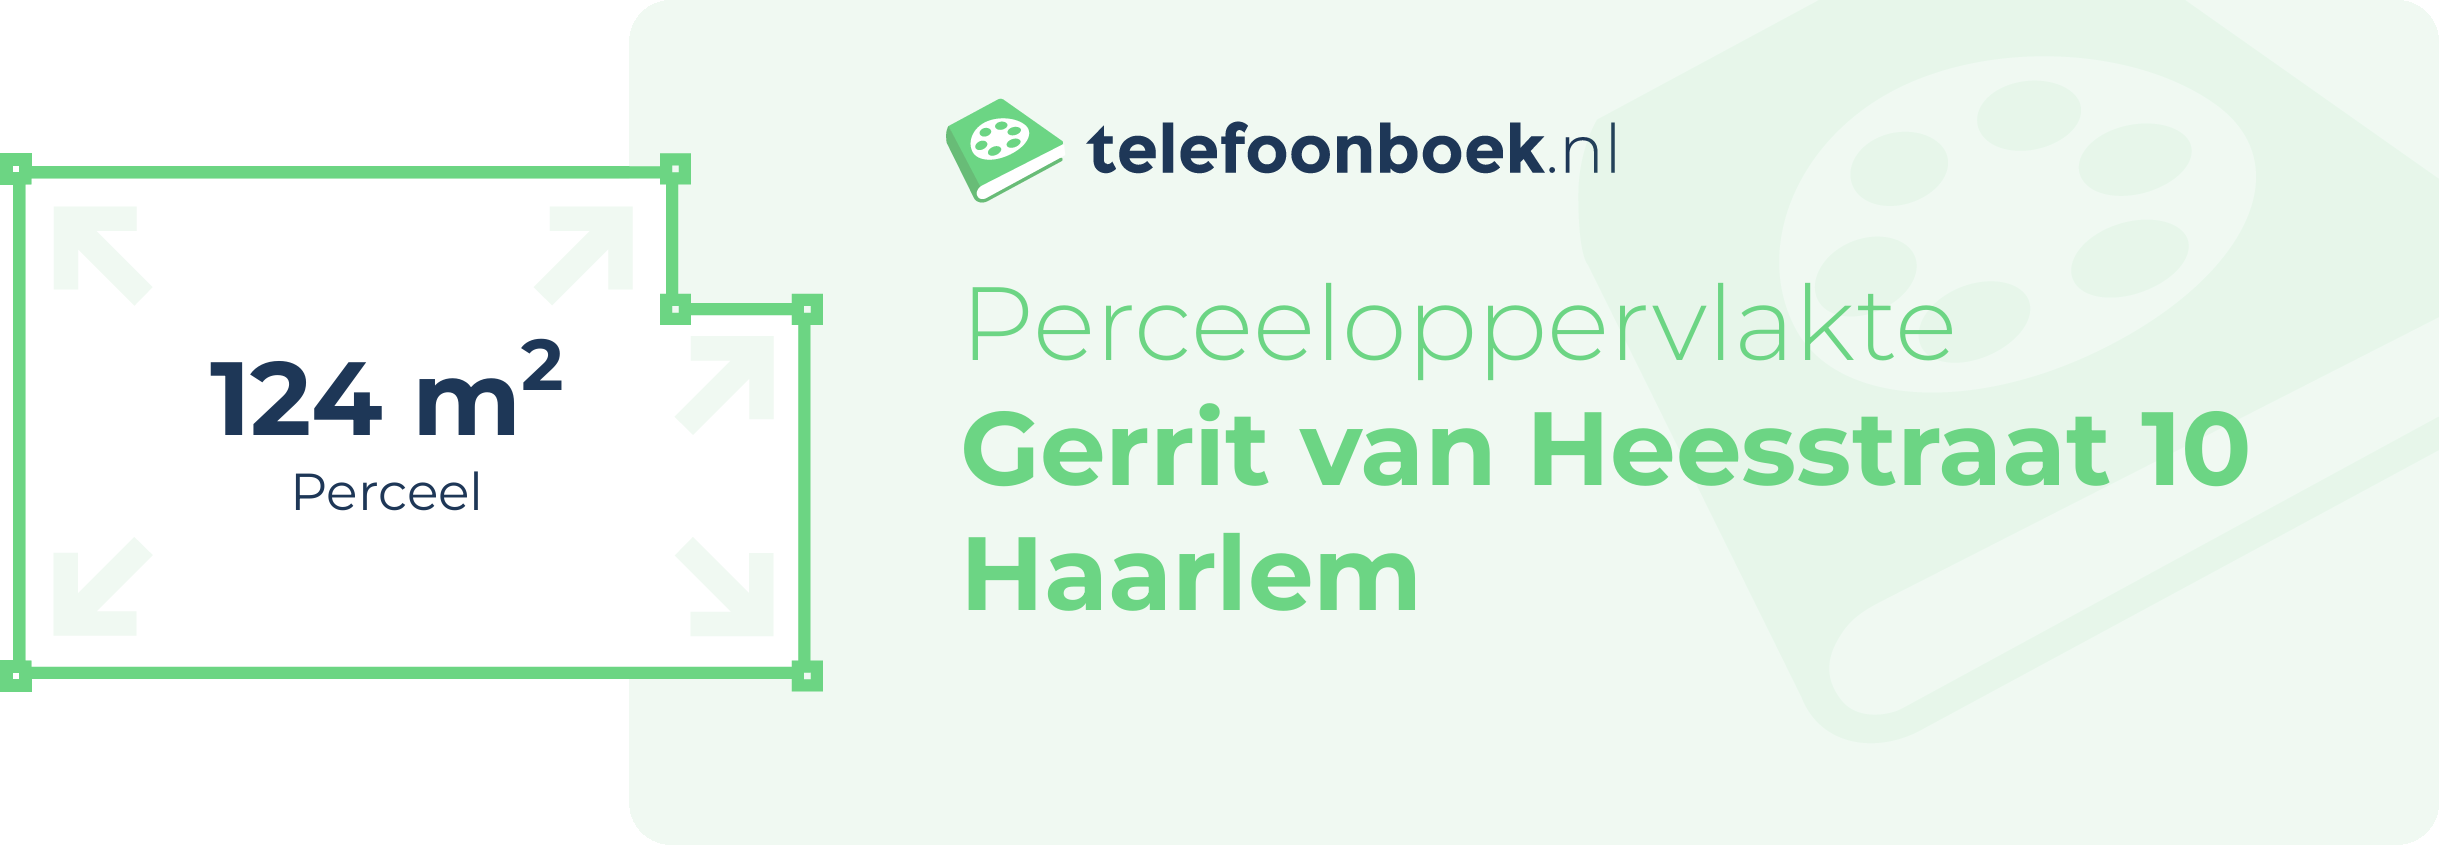 Perceeloppervlakte Gerrit Van Heesstraat 10 Haarlem